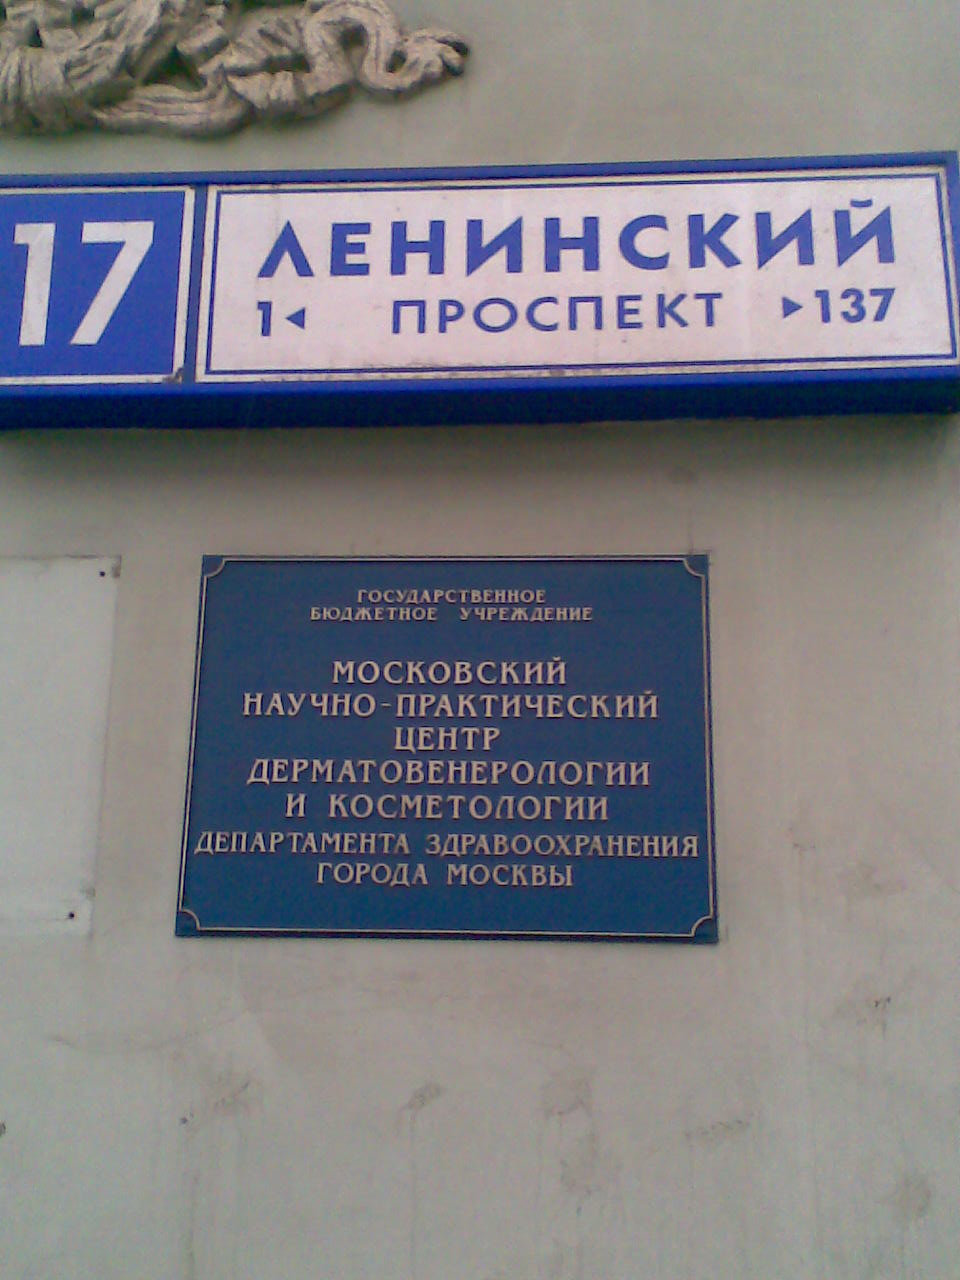 ленинский проспект 13 москва